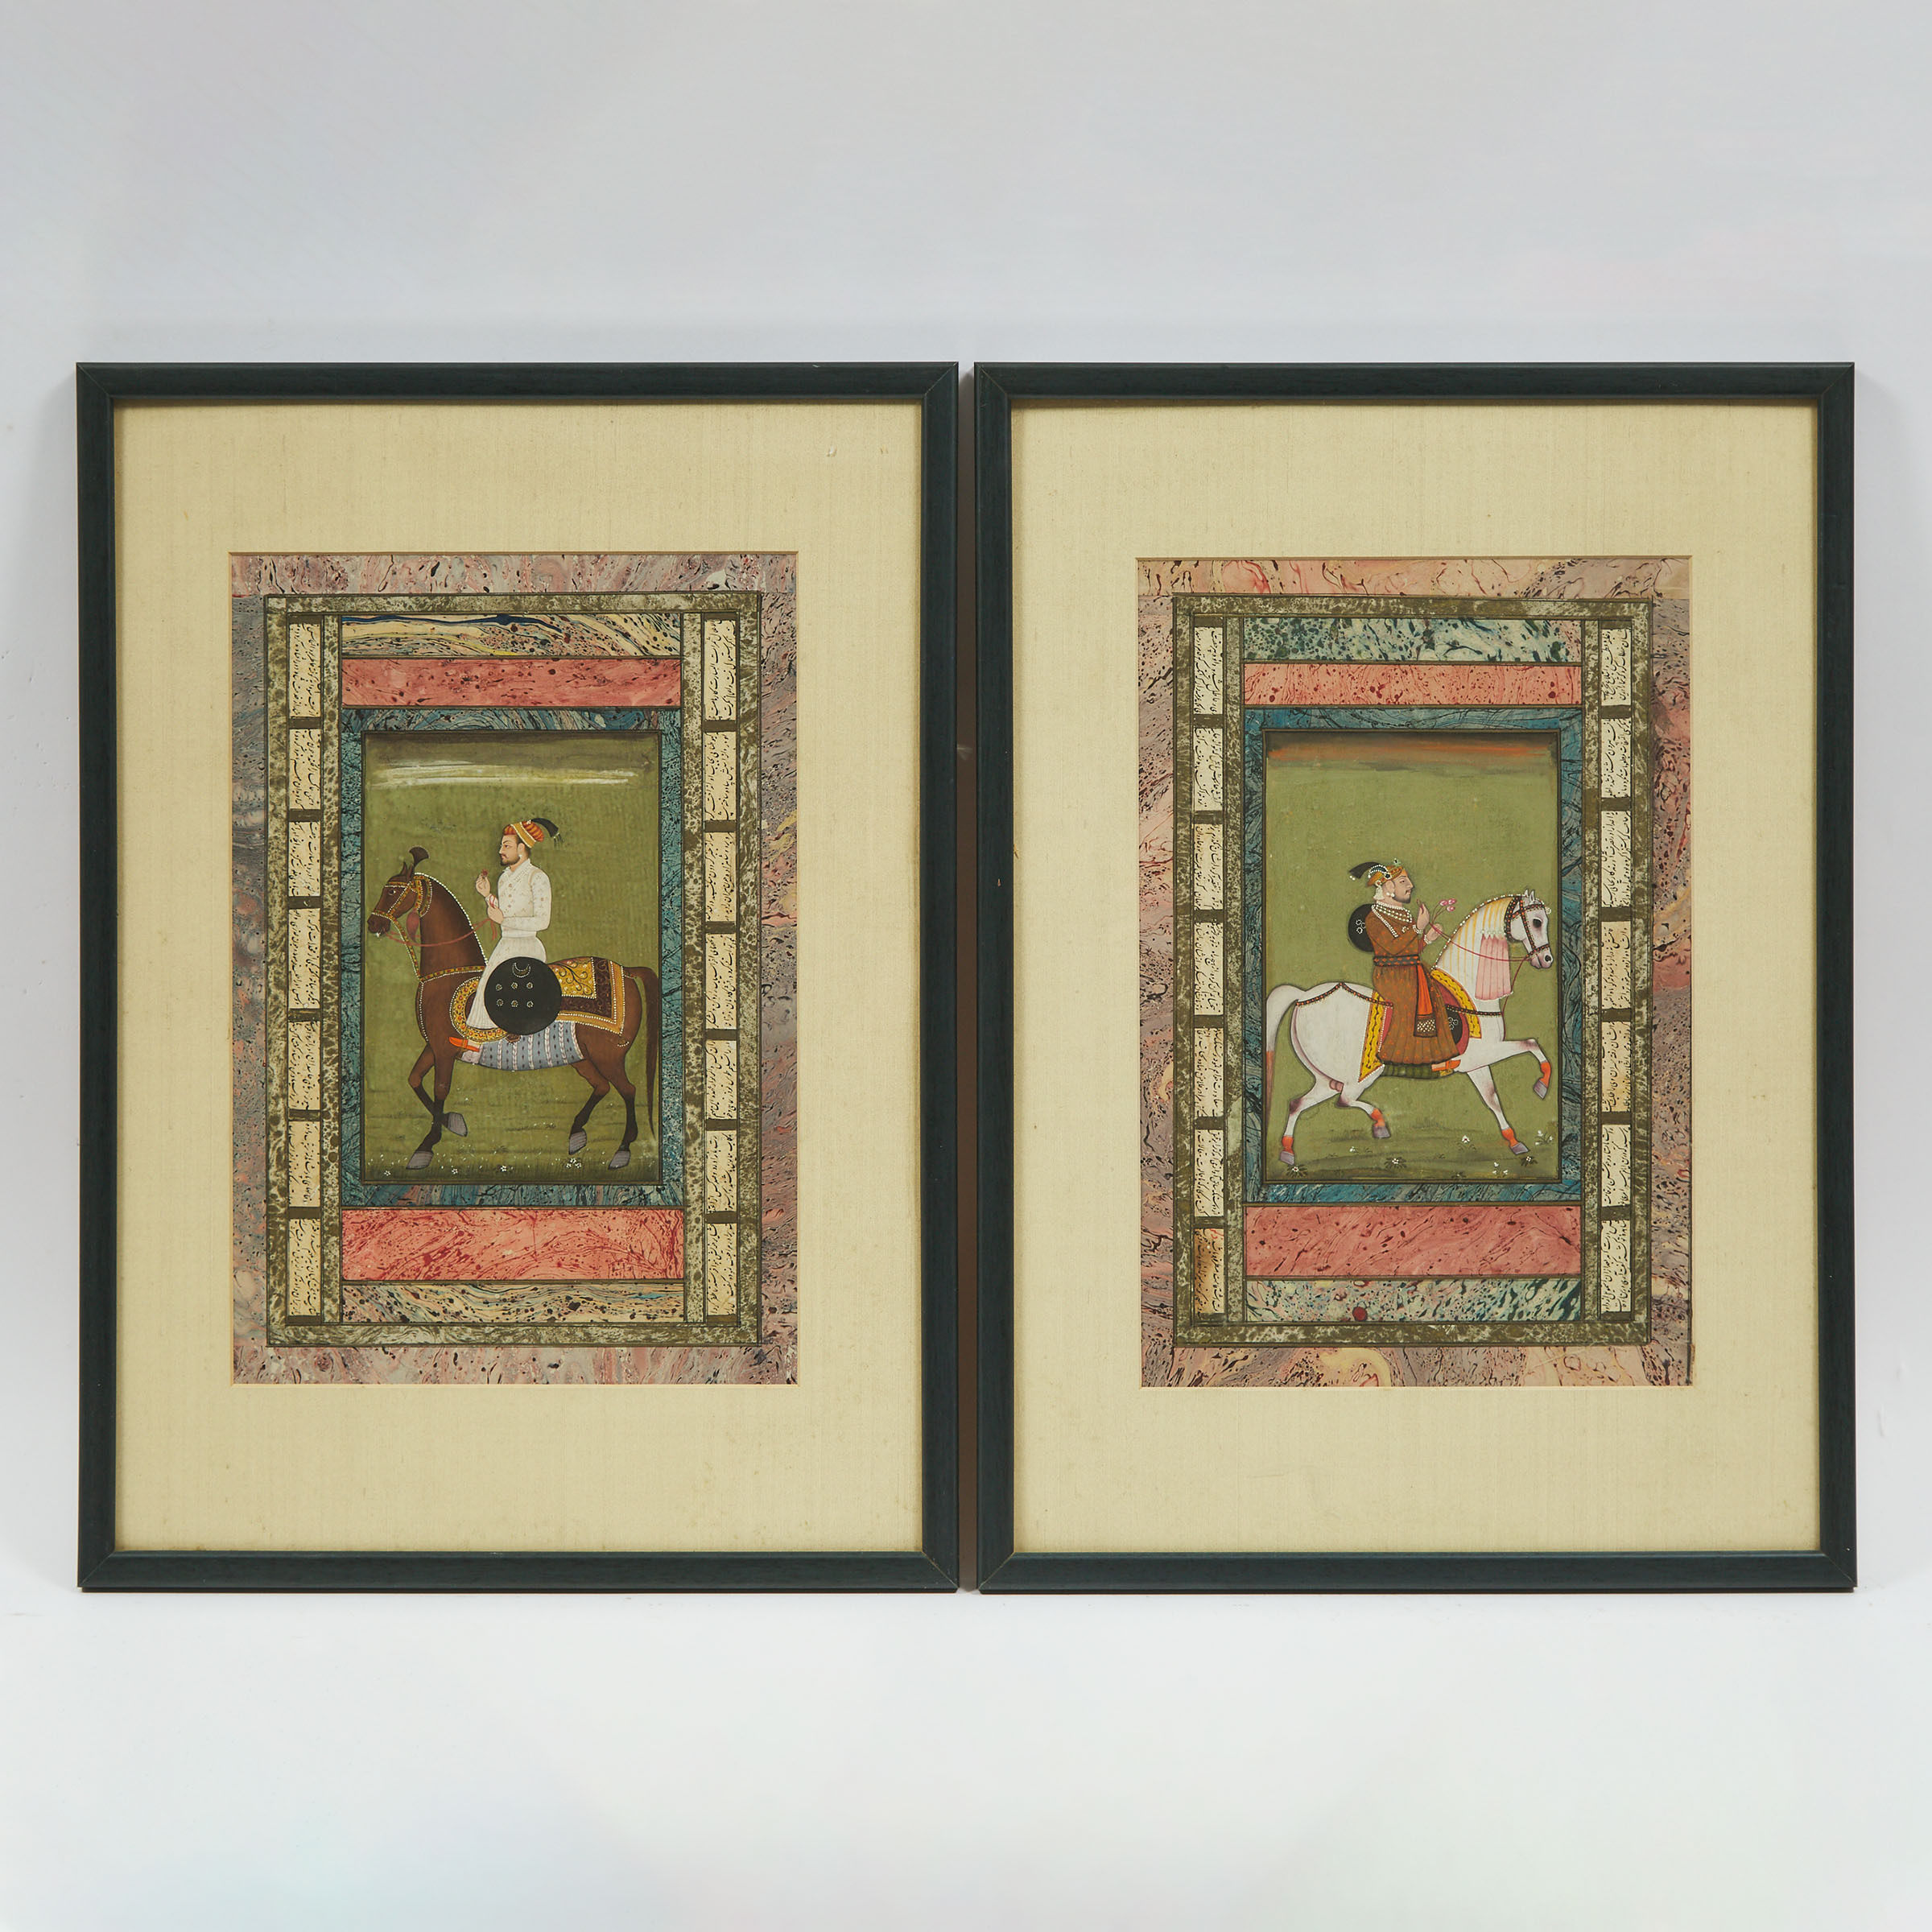 Two Equestrian Portraits, Deccan, 18th/19th Century